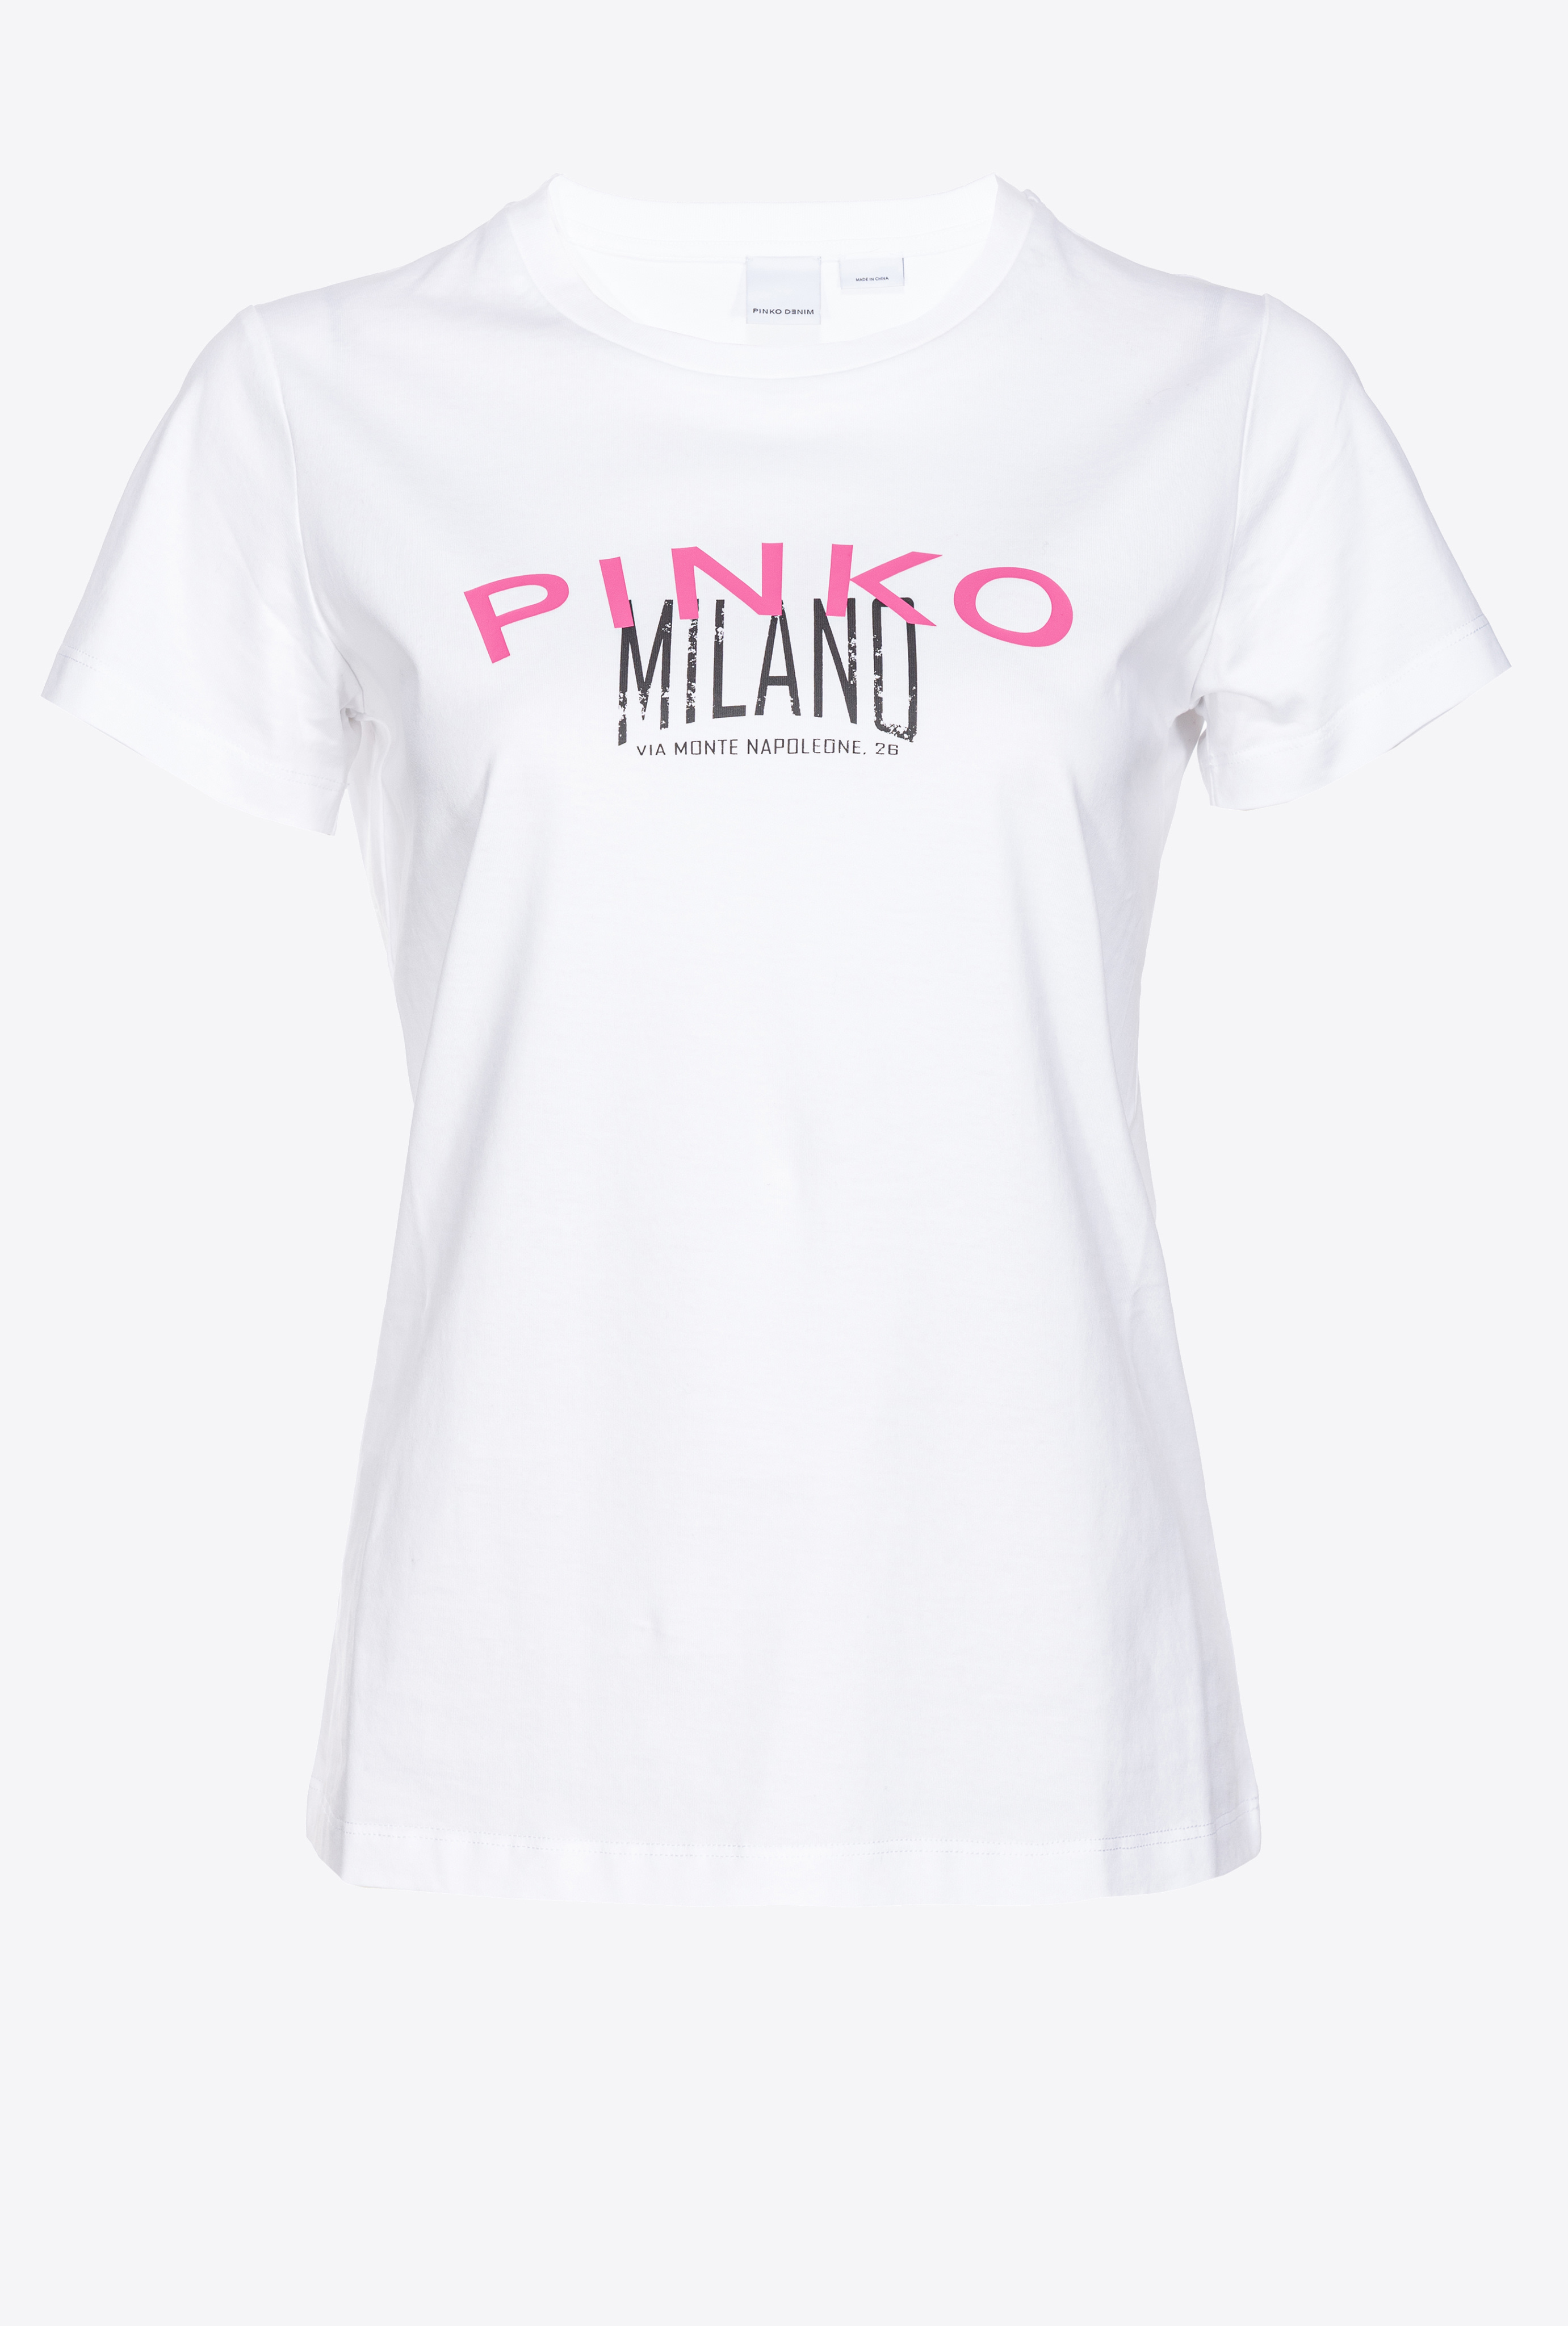 Pinko Cities T-shirt In Bright White